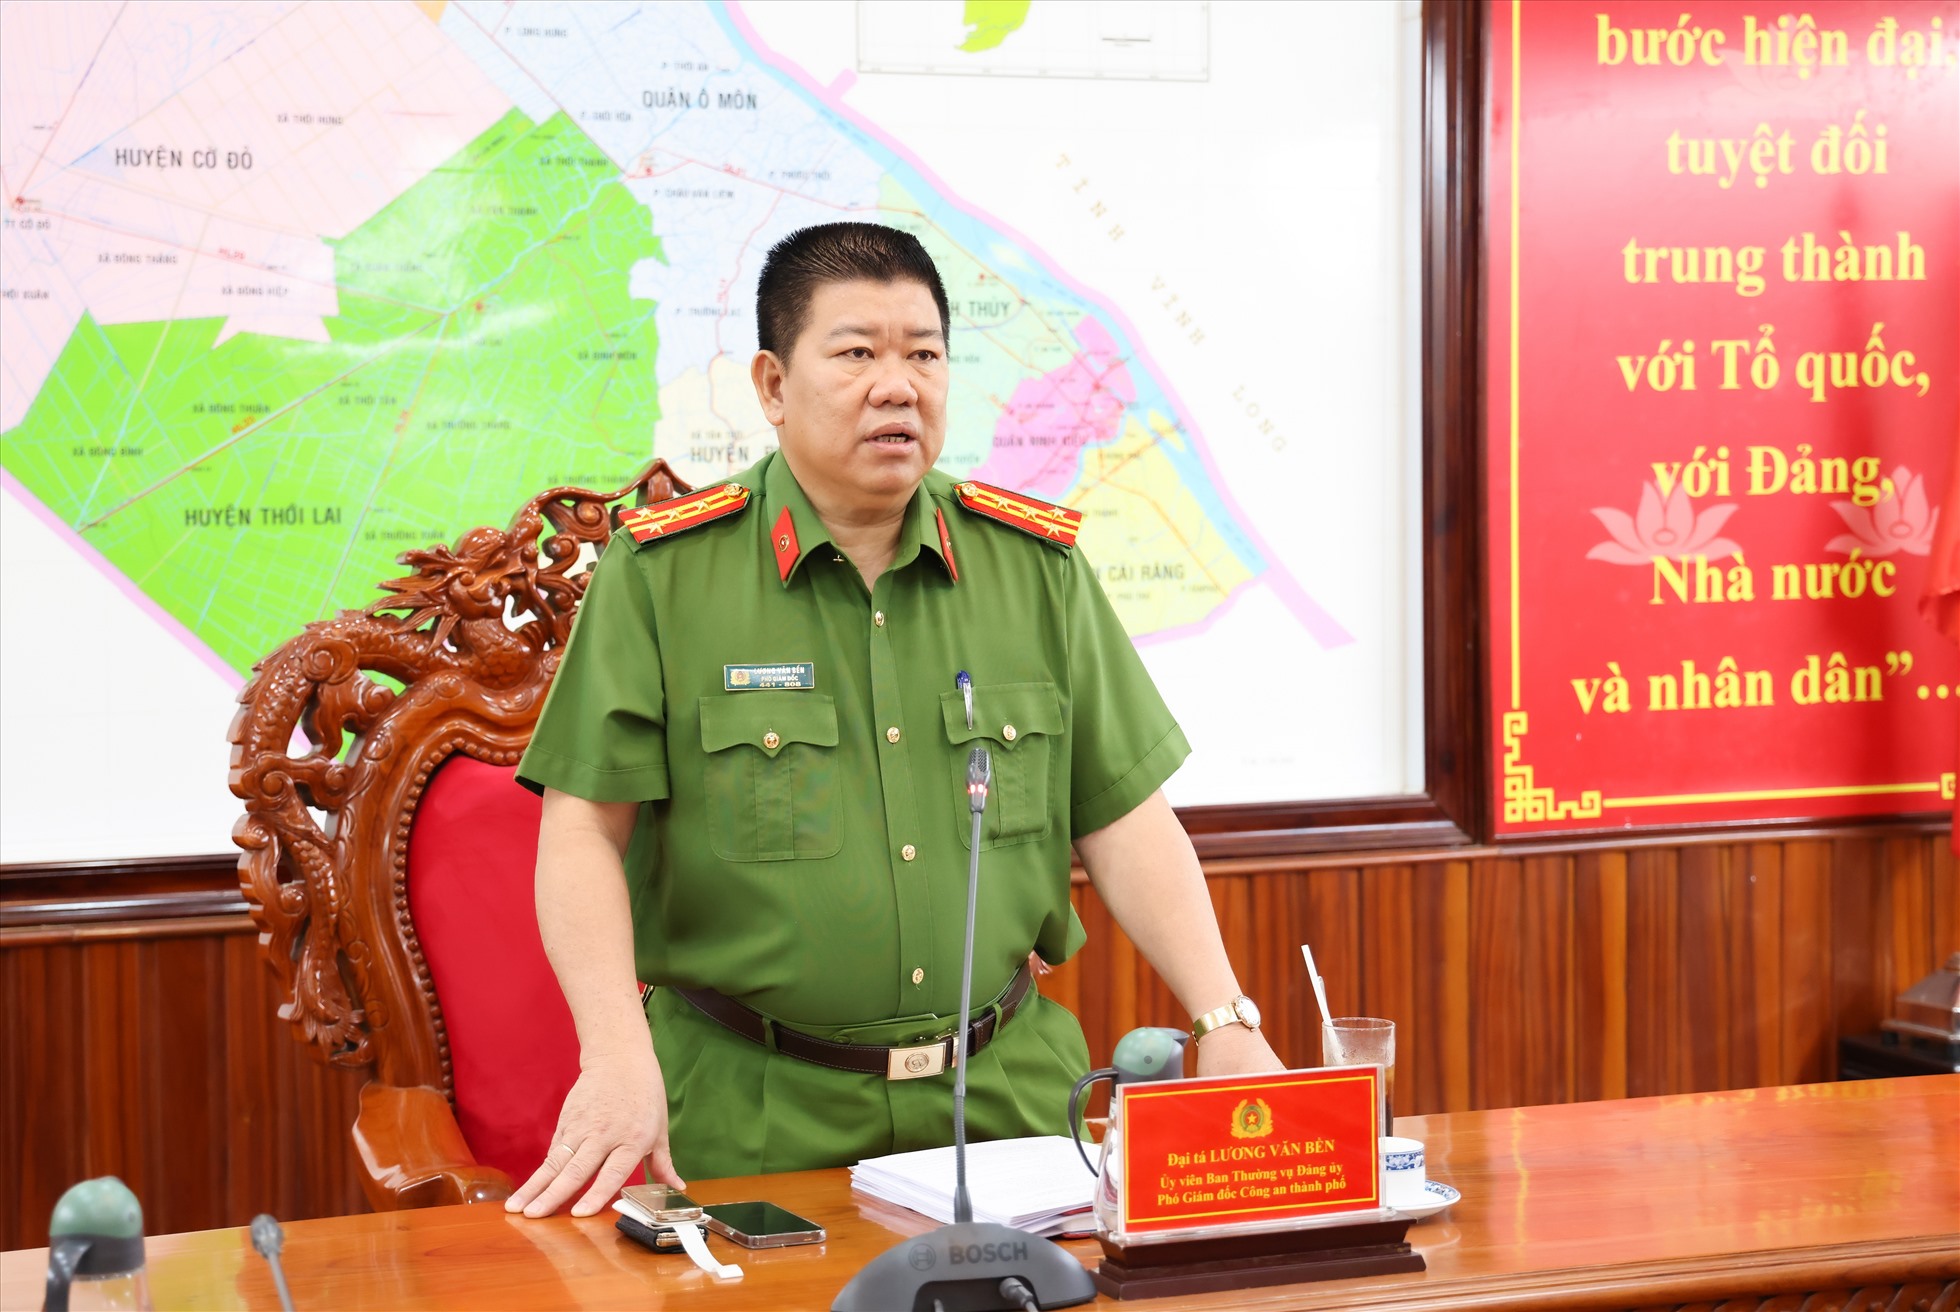 Đại tá Lương Văn Bền - Phó Giám đốc Công an thành phố Cần Thơ phát biểu. Ảnh: Tạ Quang